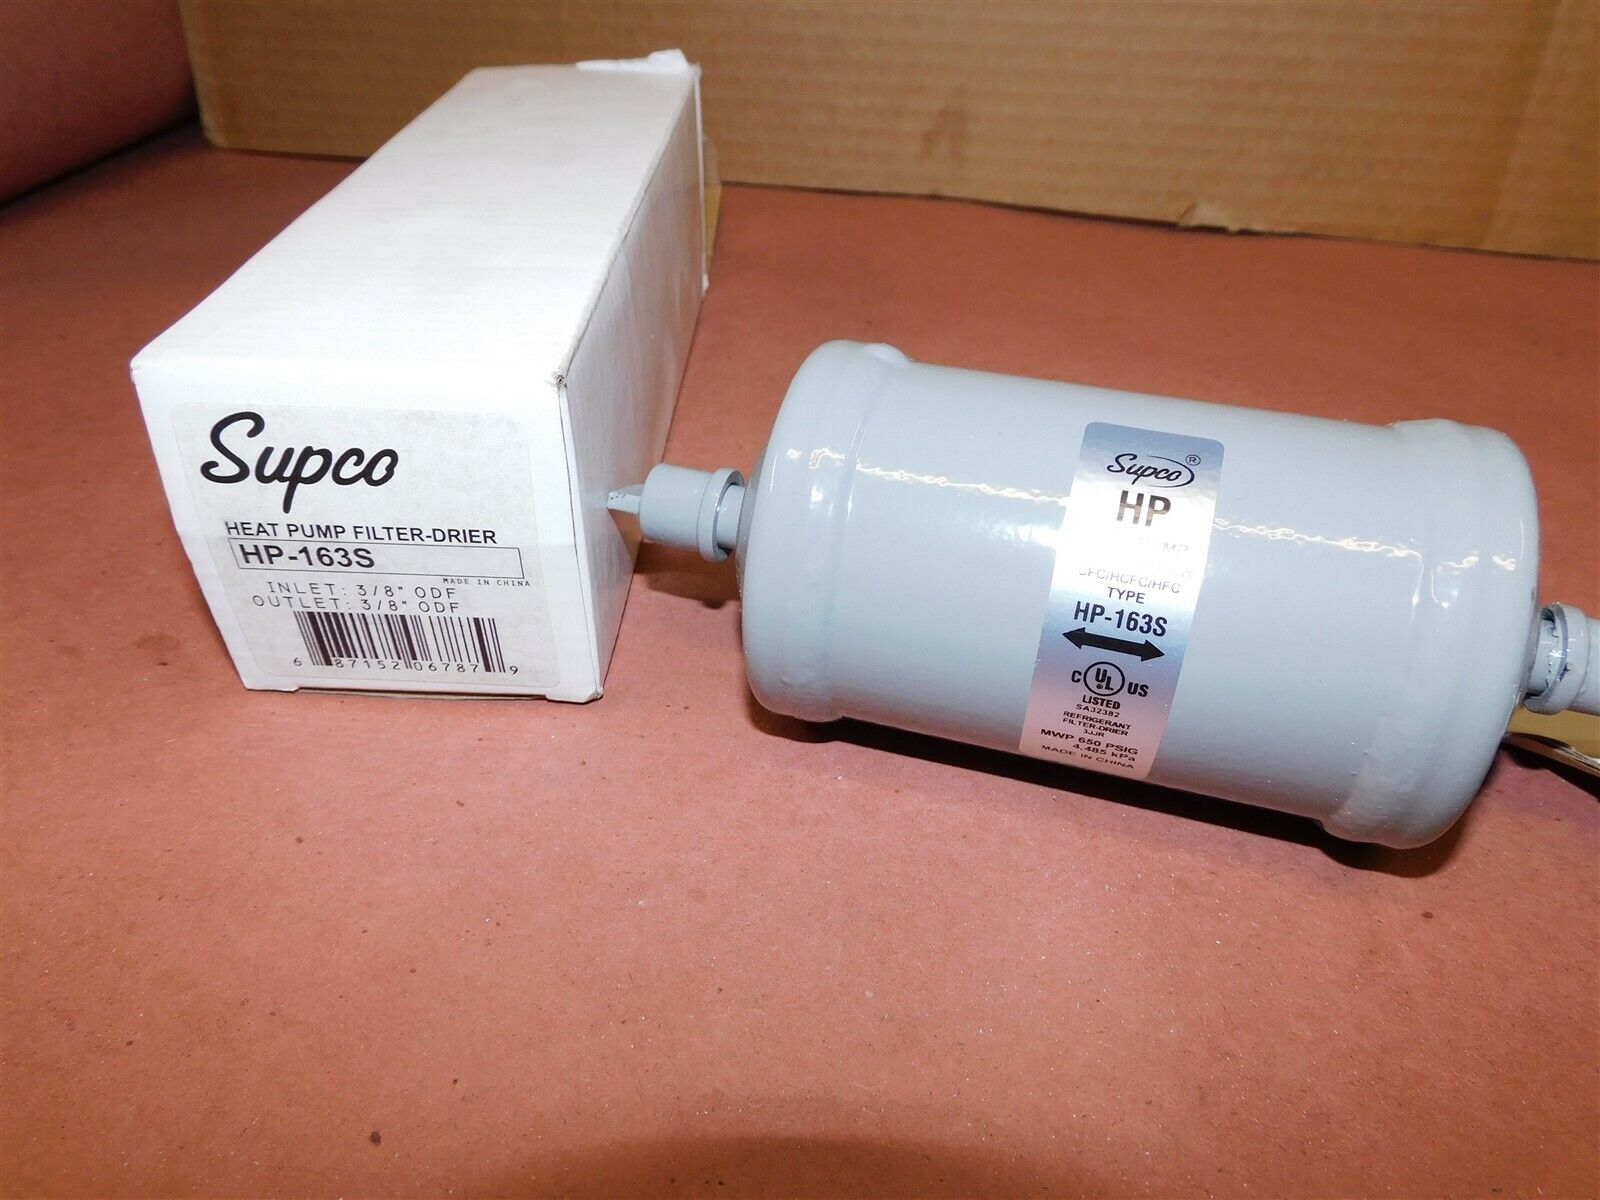 Supco HP-163S Biflow Heat Pump Filter Dryer 3/8\